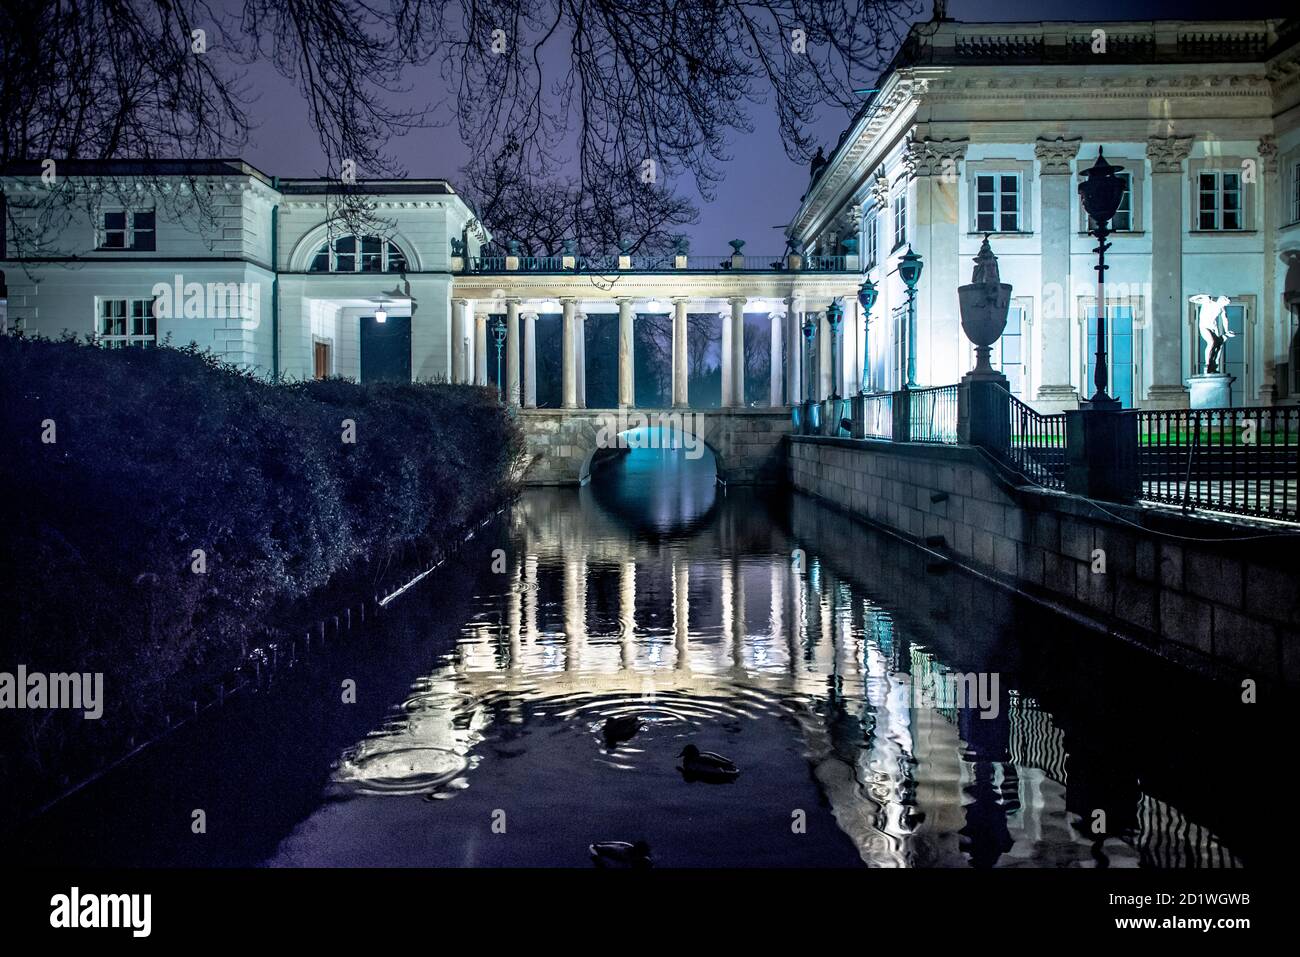 Vista notturna del Palazzo sull'acqua nel Parco Lazienki reale di Varsavia, Polonia, costruito nel 1689. Foto Stock